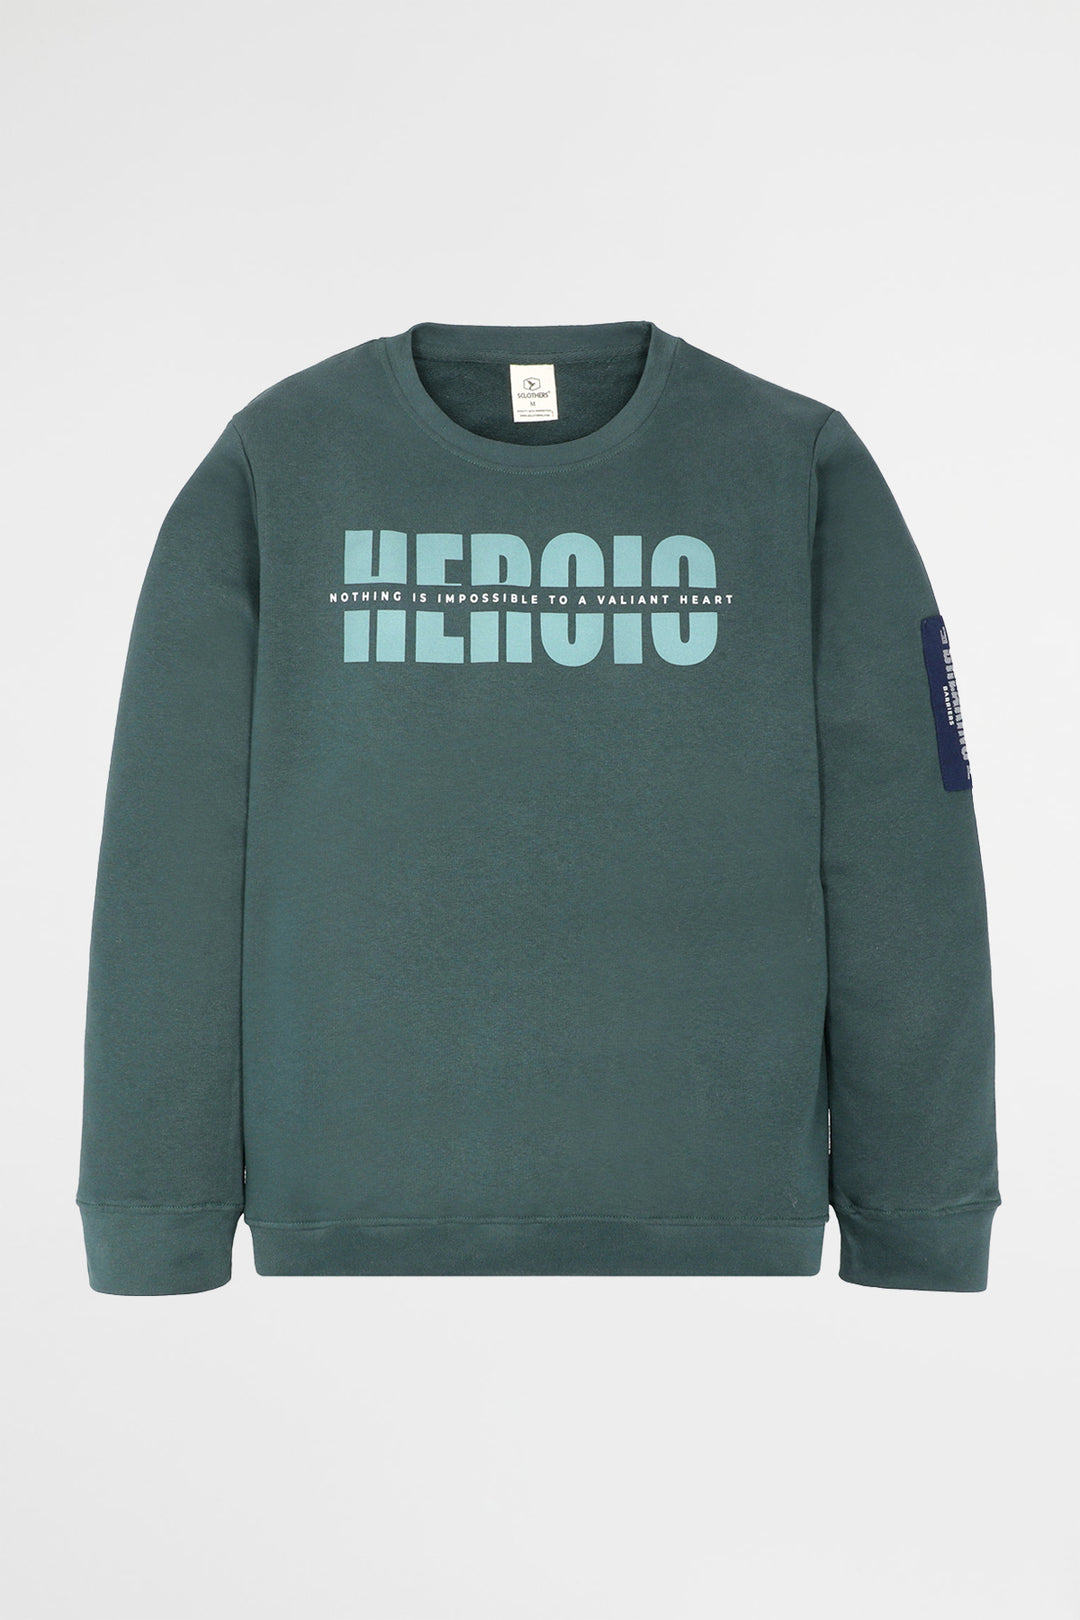 Heroic Teal Sweatshirt - W22 - MSW049R